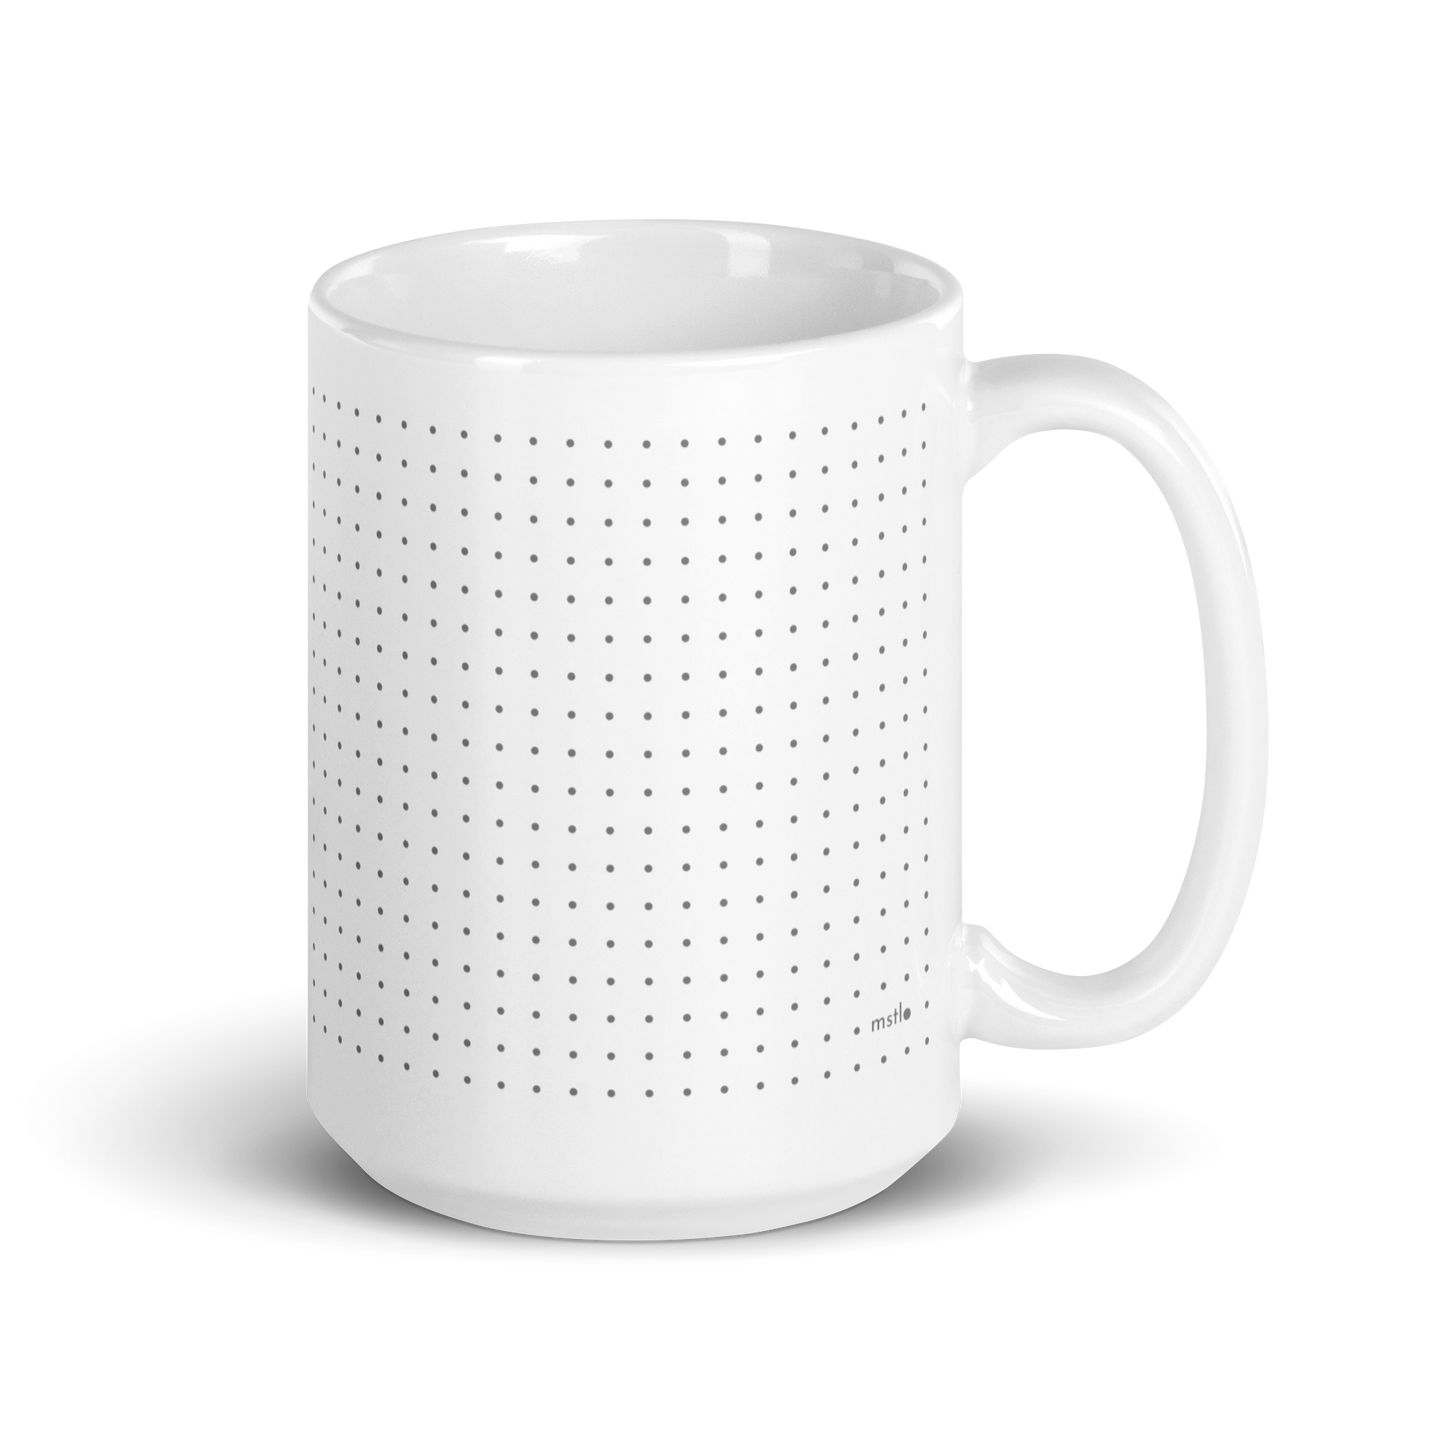 Dot Grid Mug